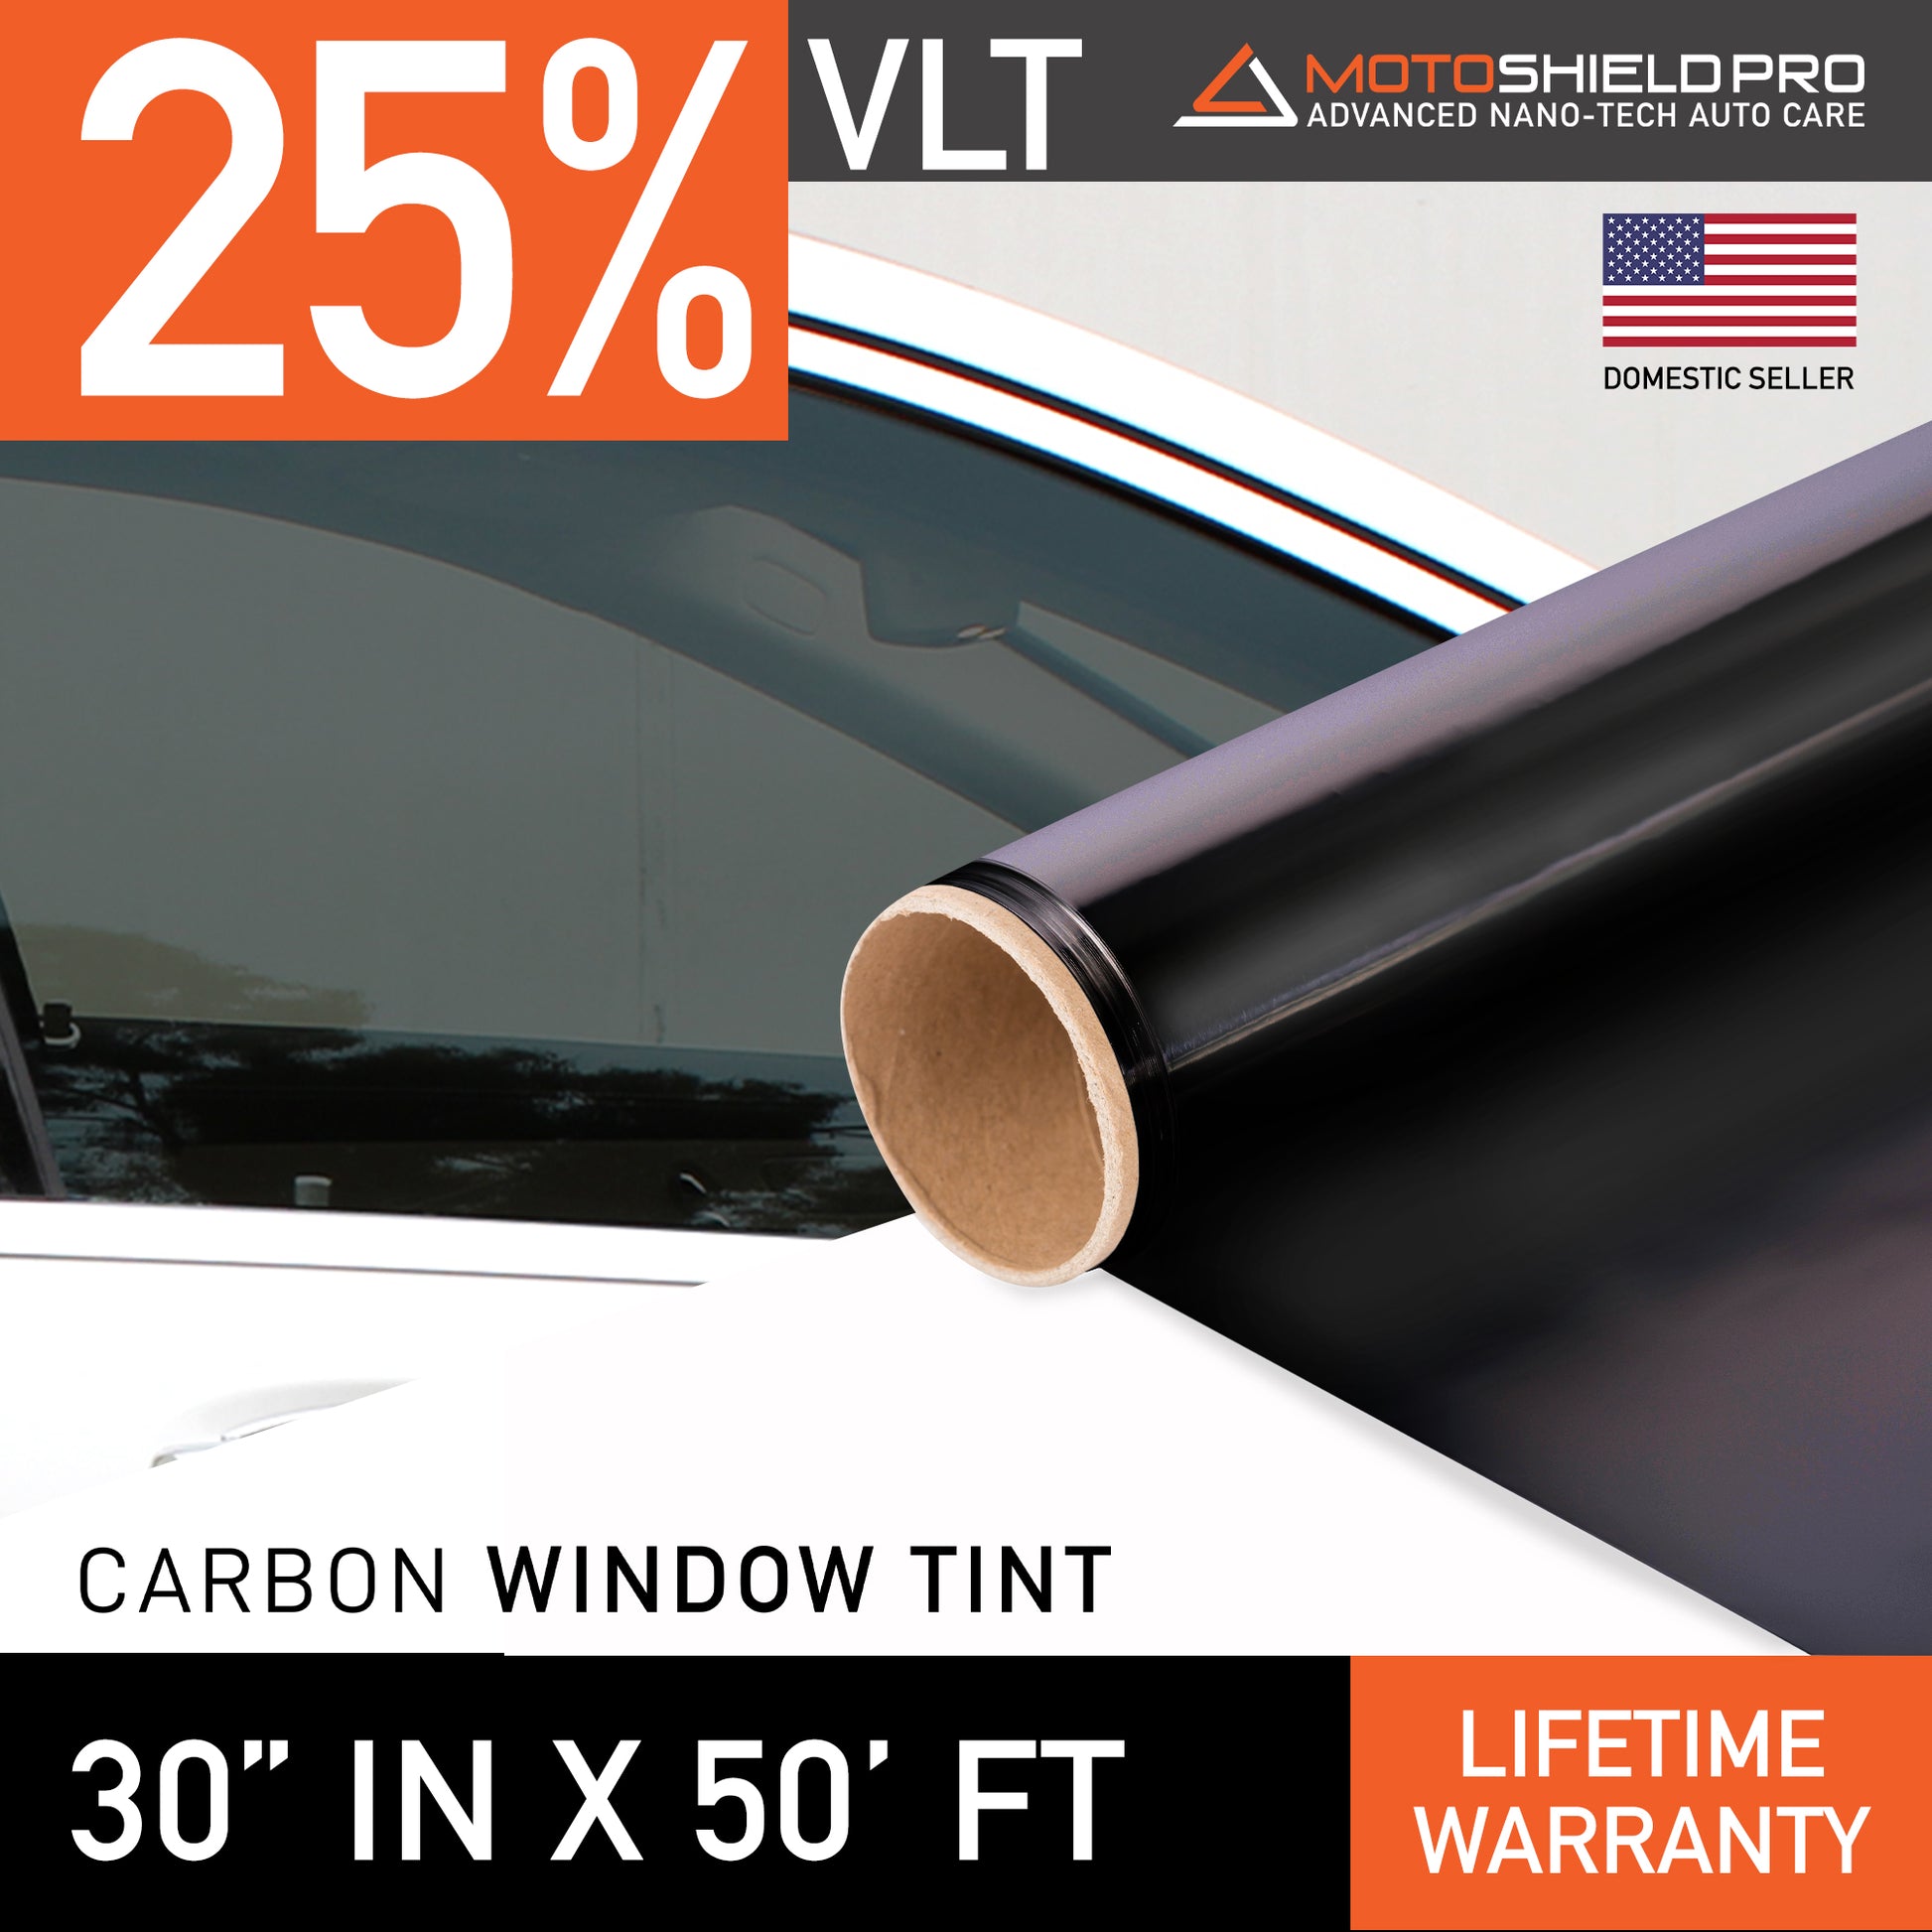 MotoShield Pro Carbon Window Tint - 30" in x 50' ft Roll + Lifetime Warranty